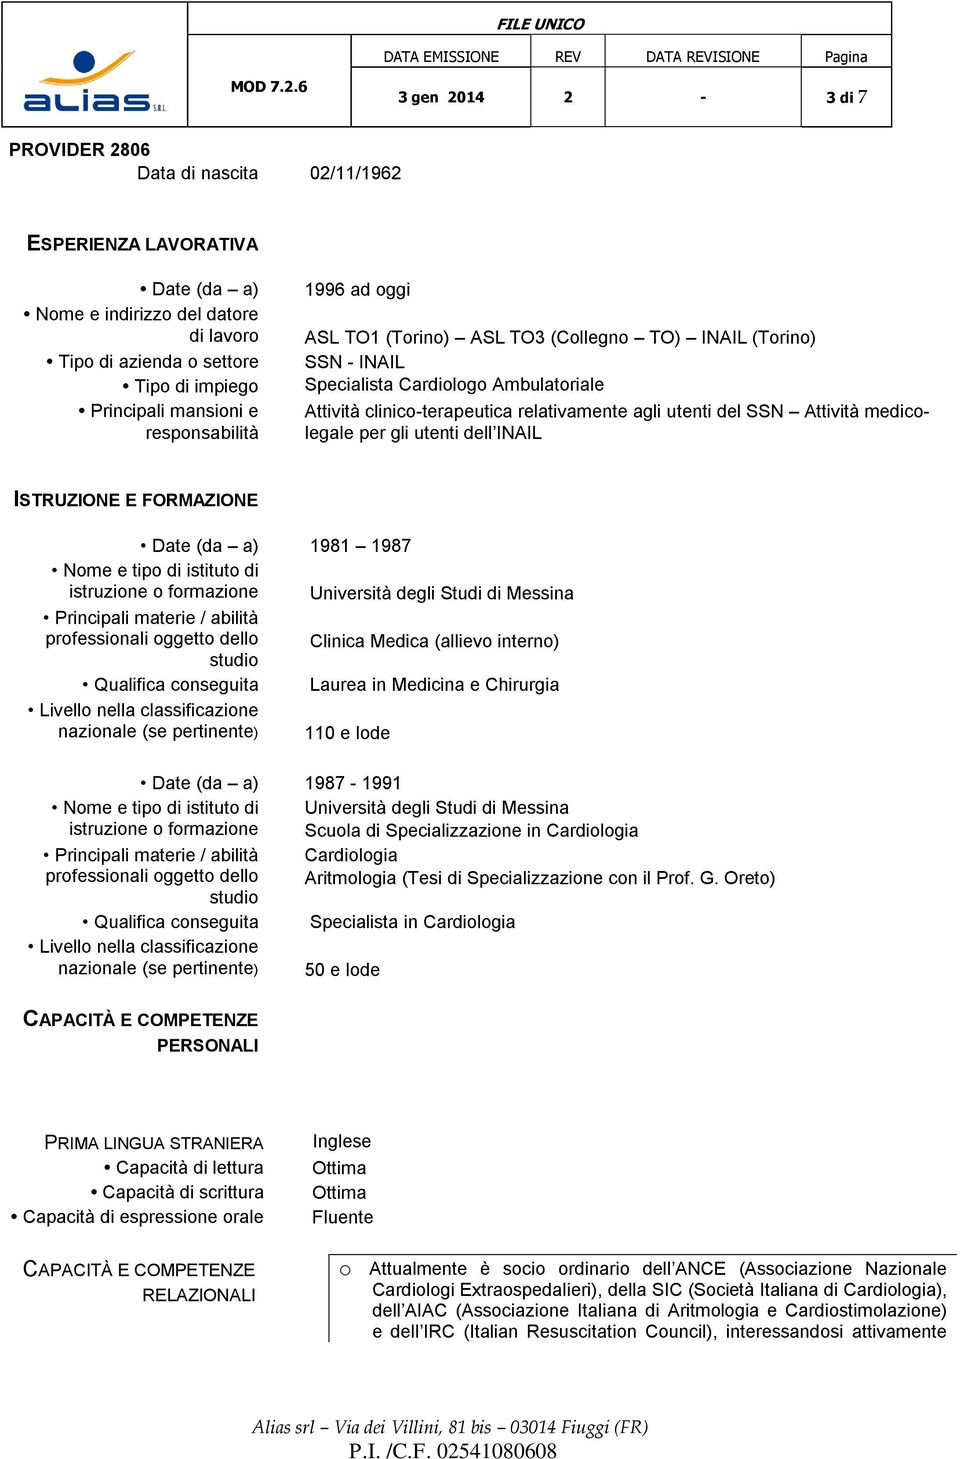 INAIL ISTRUZIONE E FORMAZIONE Date (da a) 1981 1987 Nme e tip di istitut di istruzine frmazine Università degli Studi di Messina Principali materie / abilità prfessinali ggett dell Clinica Medica